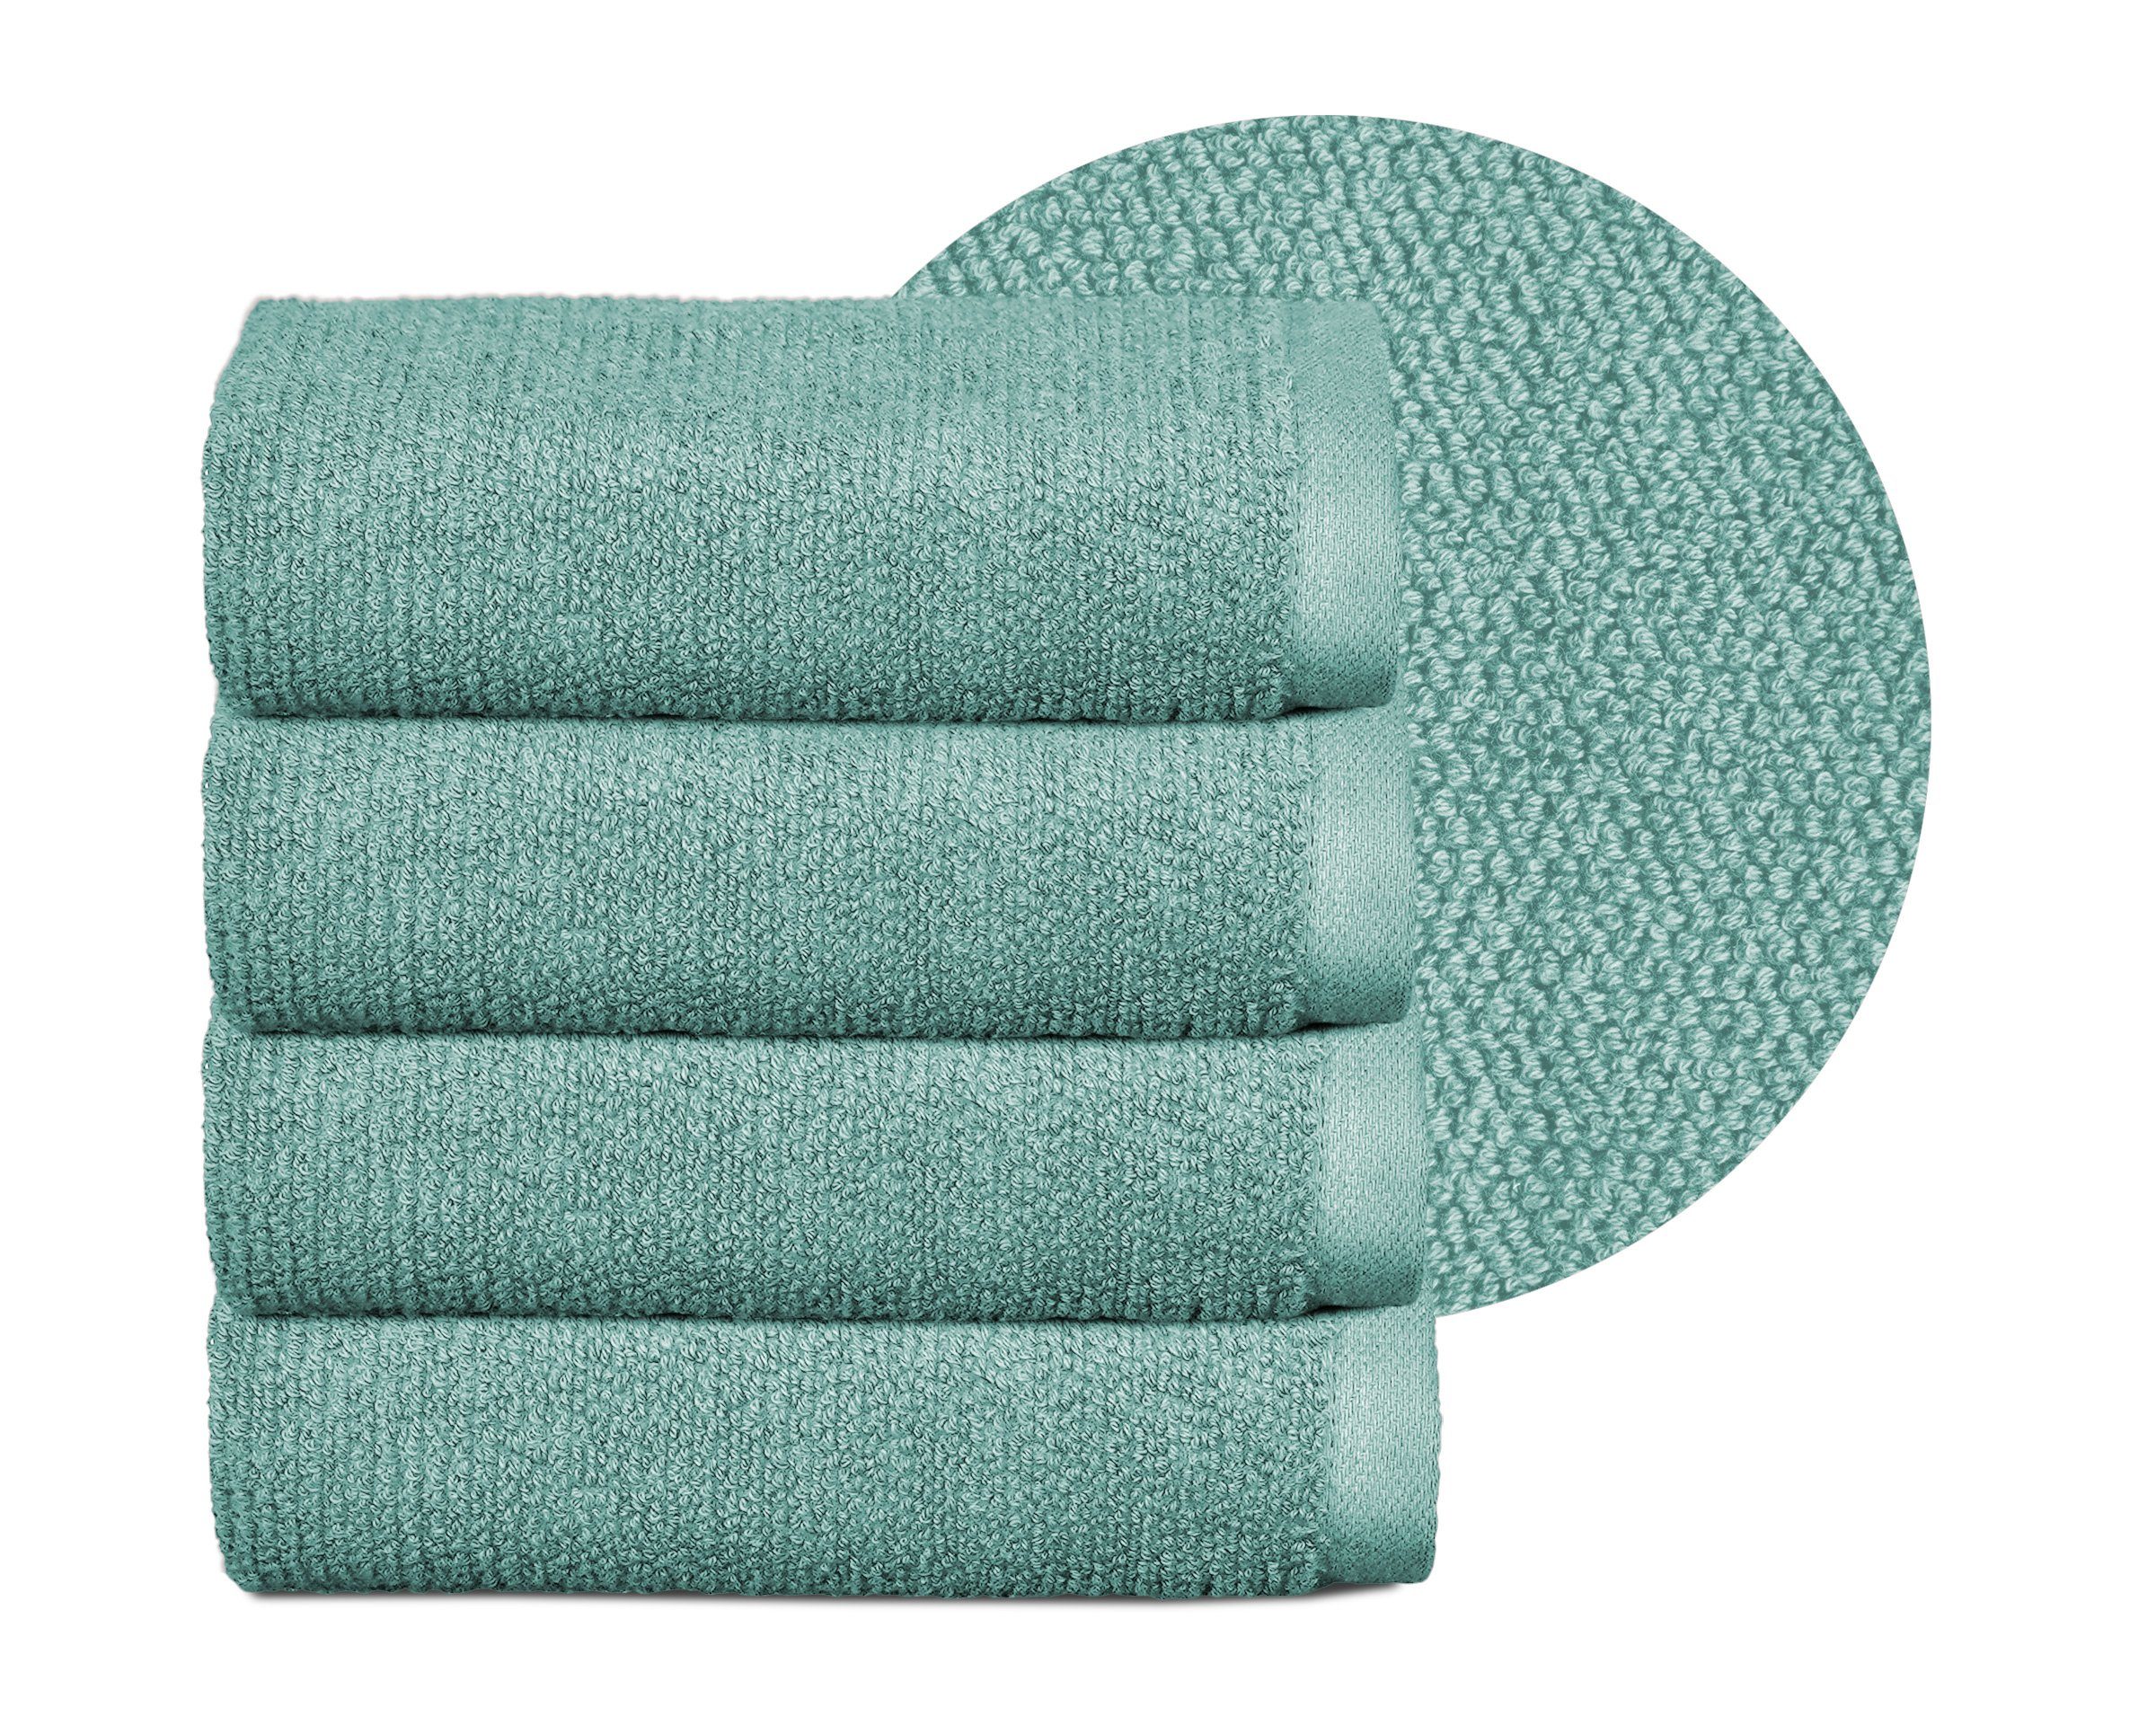 Beautex Handtuch Set Handtuch Set, Made in Europe, Frottier, (Multischlaufen-Optik, Frottier Premium Set aus 100% Baumwolle 550g/m) Ozeanblau